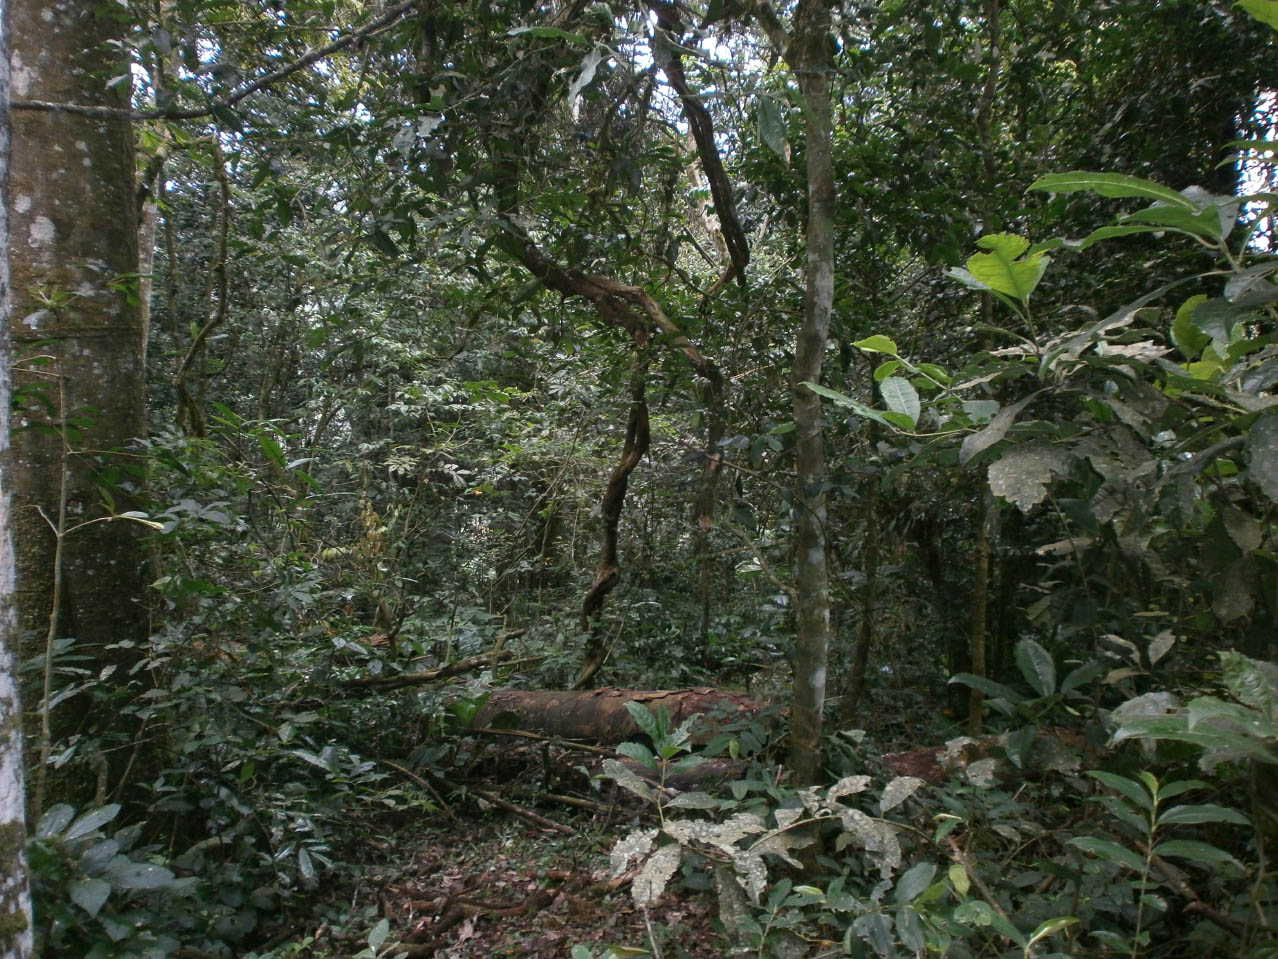 Il Kibale Forest National Park con un estensione totale di 766 Km2 è costituito soprattutto dalla foresta tropicale umida ma comprende anche altri tipi di habitat come praterie e zone umide. Le specie arboree maggiormente rappresentate sono: Picea excelsa e i generi Aningeria, Newtonia, Olea (Foto: I.Toni).